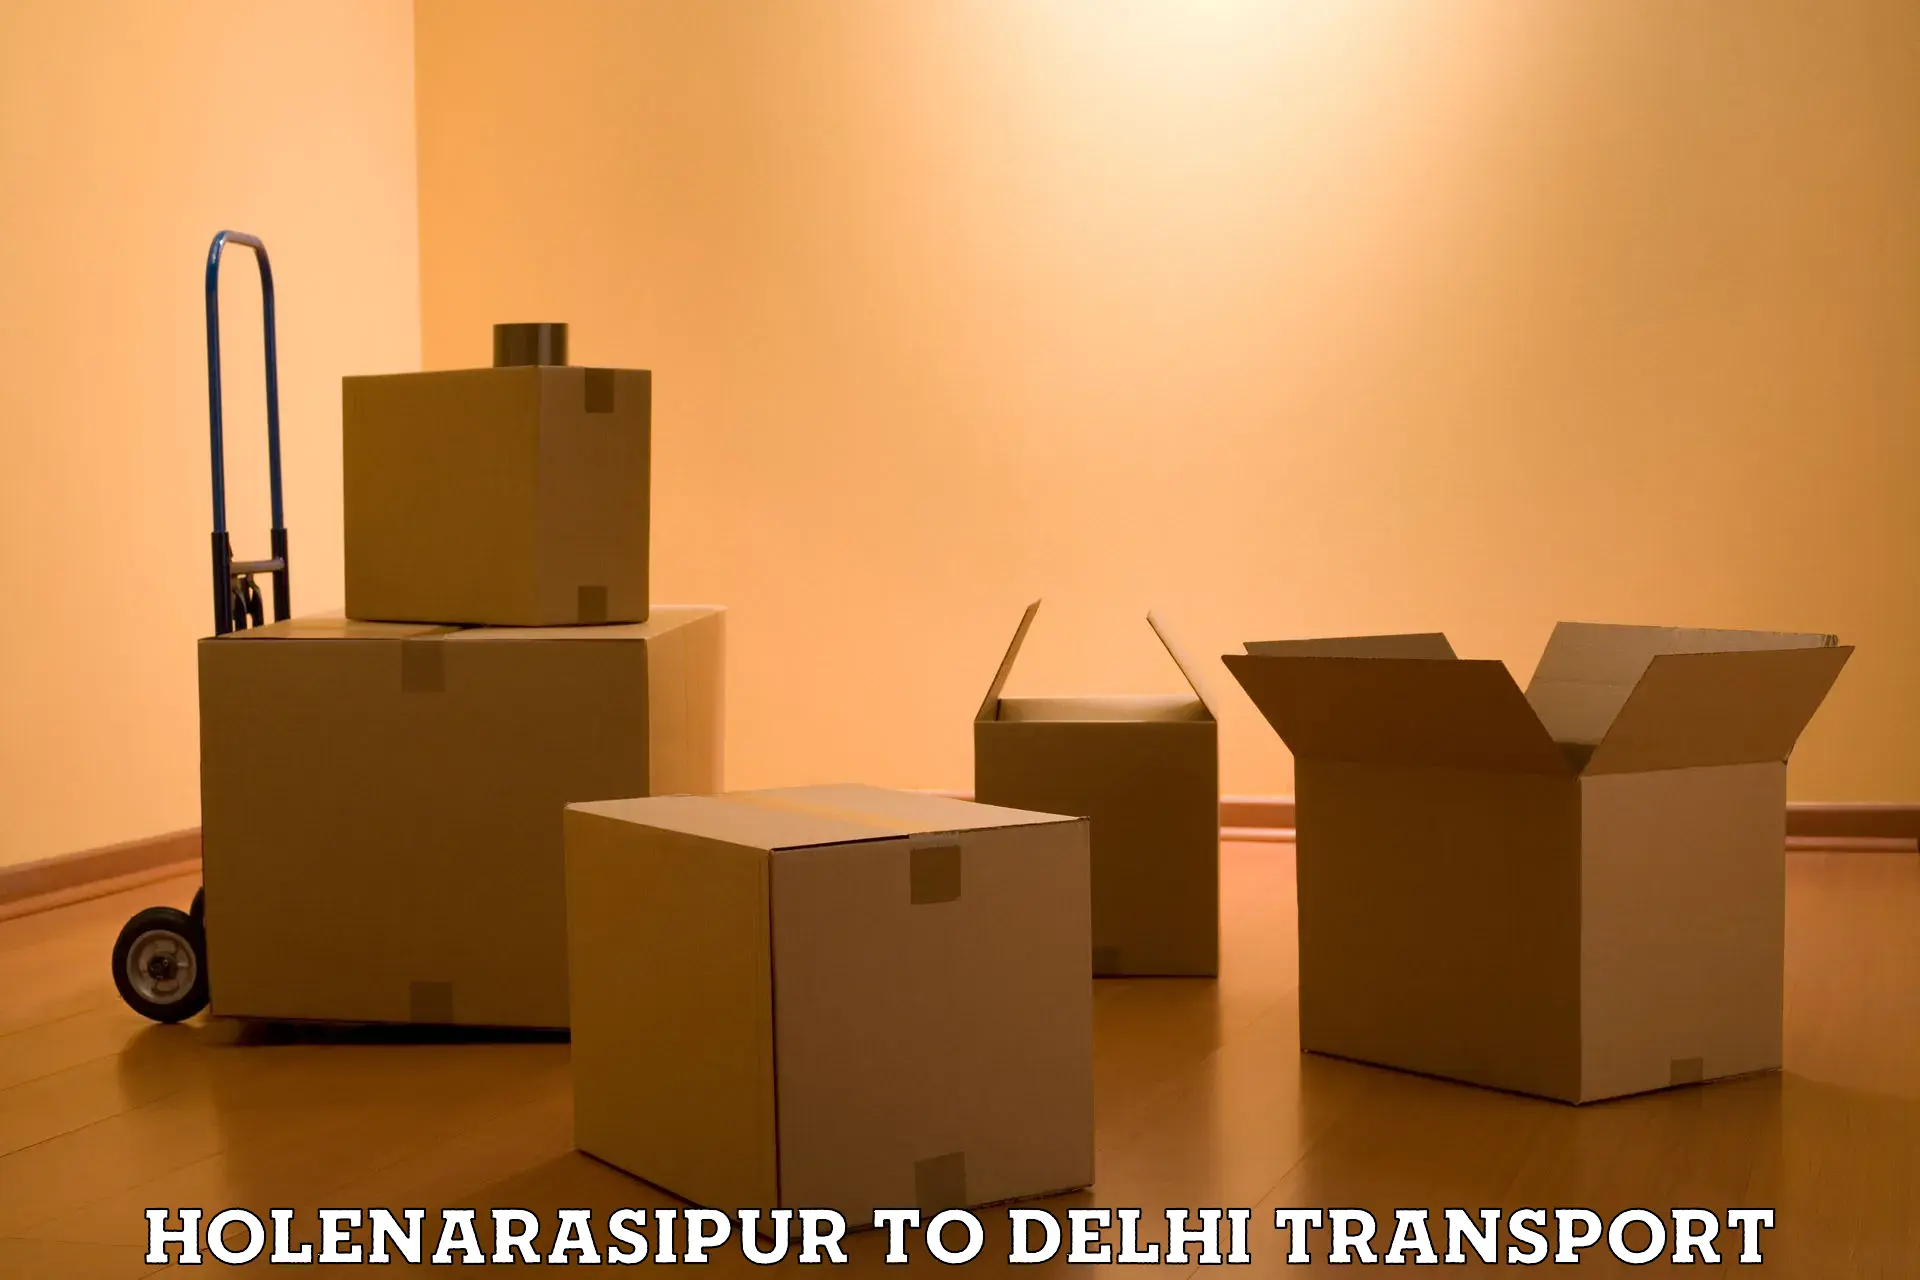 Nearest transport service Holenarasipur to Delhi